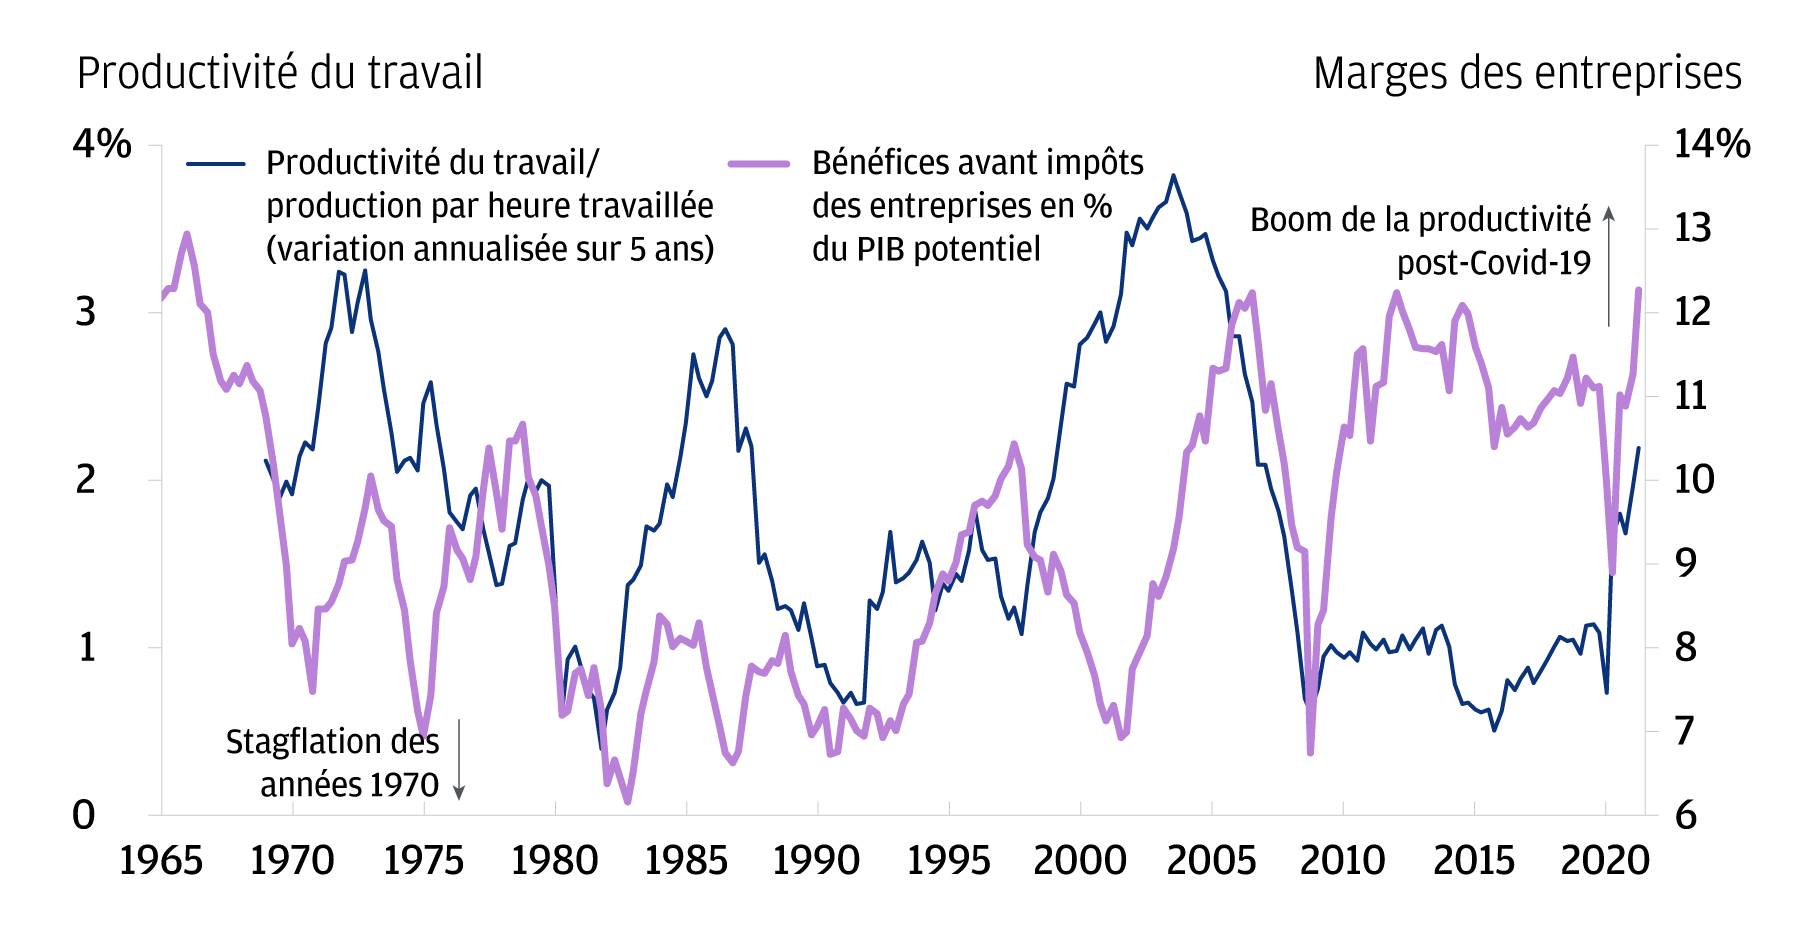 Un élément de comparaison significatif avec la stagflation des années 1970 est qu'aujourd'hui, les marges bénéficiaires des entreprises et la productivité du travail sont en hausse. Ce graphique montre les marges bénéficiaires des entreprises (mesurées comme les bénéfices des entreprises avant impôts en % du PIB potentiel) et le taux de croissance annualisé sur 5 ans glissants de la productivité du travail (calculé en divisant les ventes finales réelles aux acheteurs privés nationaux par le nombre moyen d'heures hebdomadaires de tous les employés affectés à la production dans le secteur privé hors encadrement). Ces deux indicateurs continuent d'augmenter après la pandémie (et sont supérieurs aux niveaux observés immédiatement avant la pandémie), alors qu'ils ont chuté durant les années 1970.